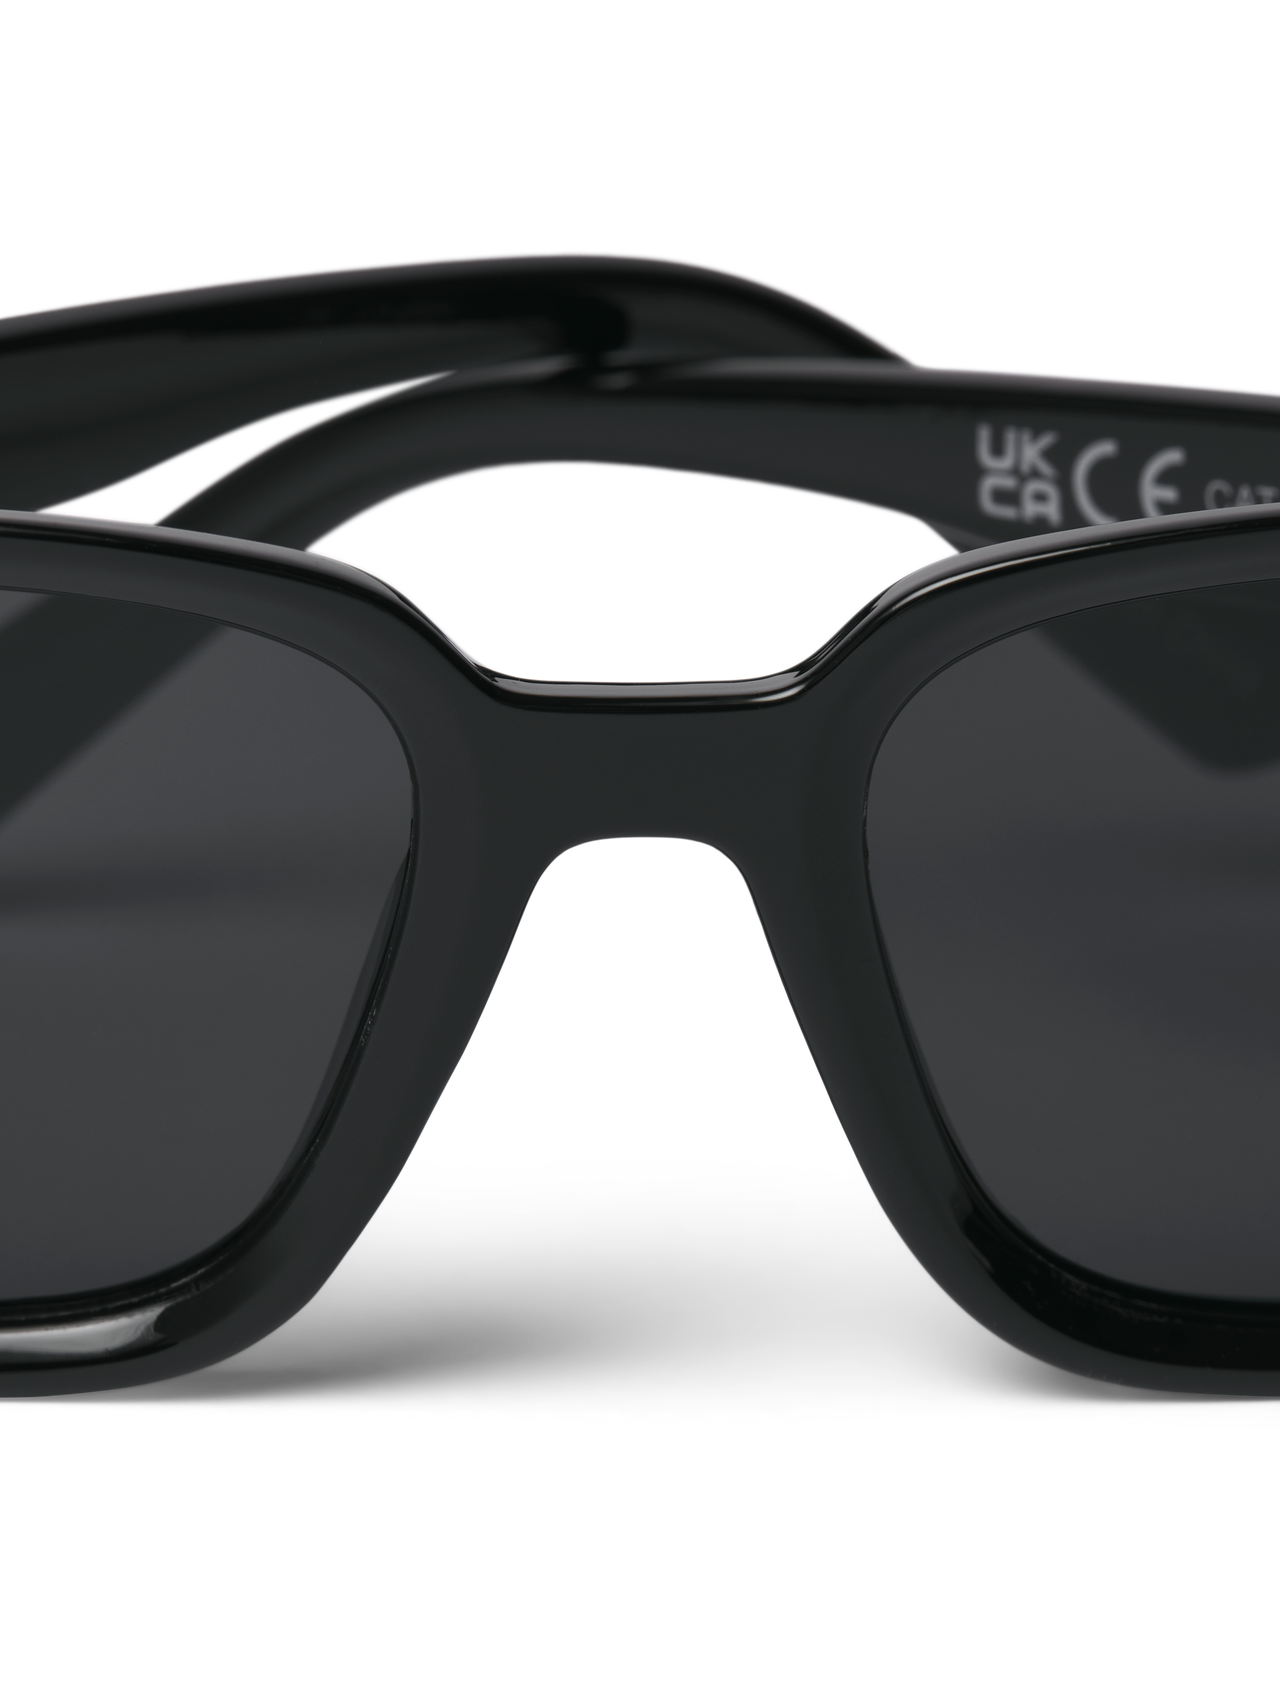 Jack & Jones Rechthoekige zonnebril -Black - 12251480